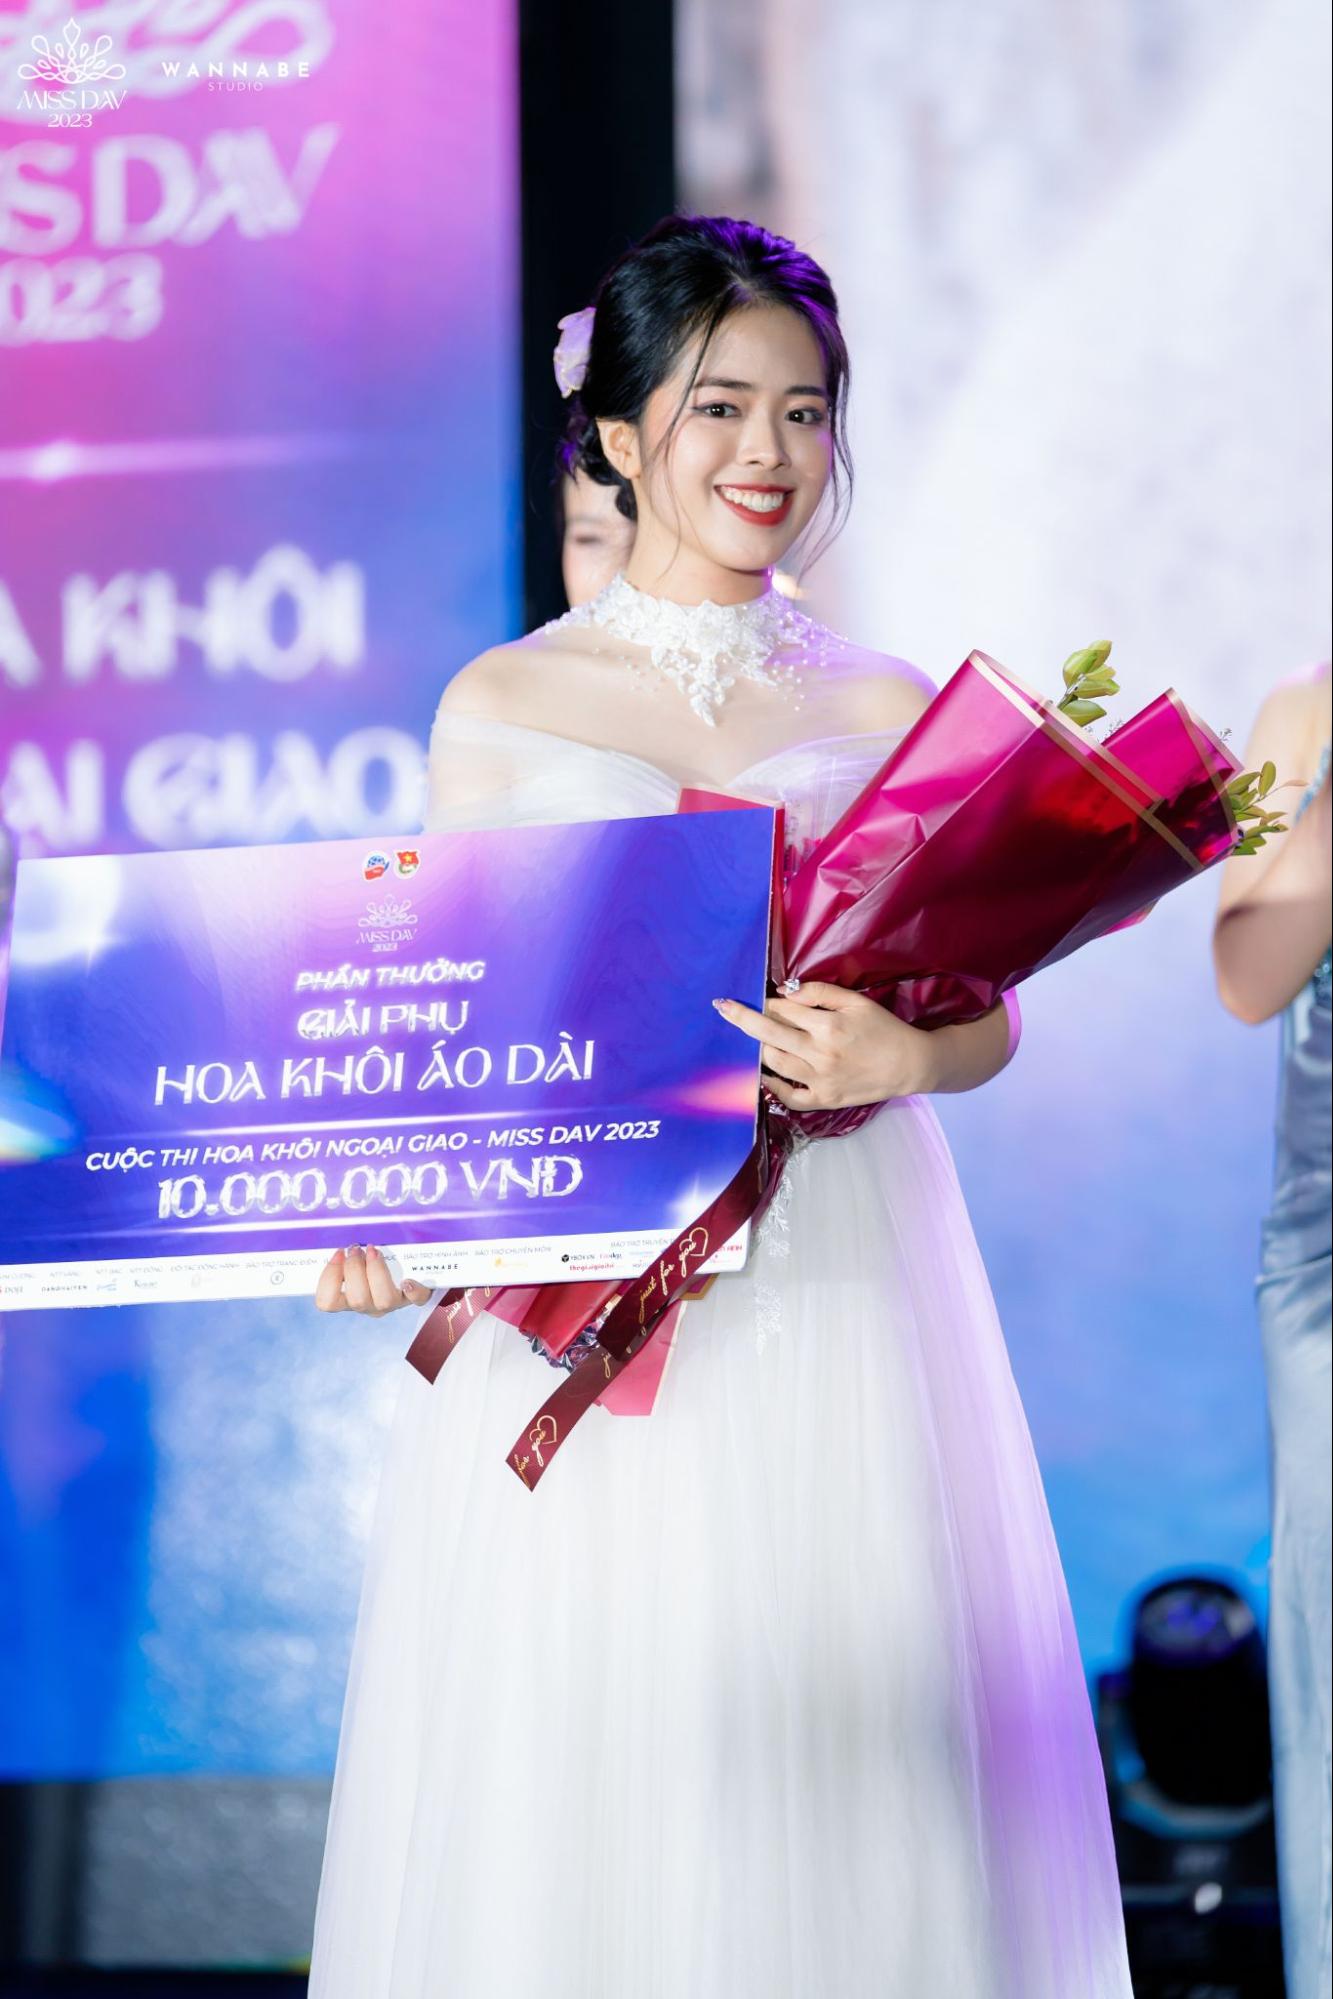 Thí sinh Nguyễn Diễm Quỳnh (SBD: 012) nở nụ cười rạng rỡ cùng giải Hoa khôi Áo dài của cuộc thi